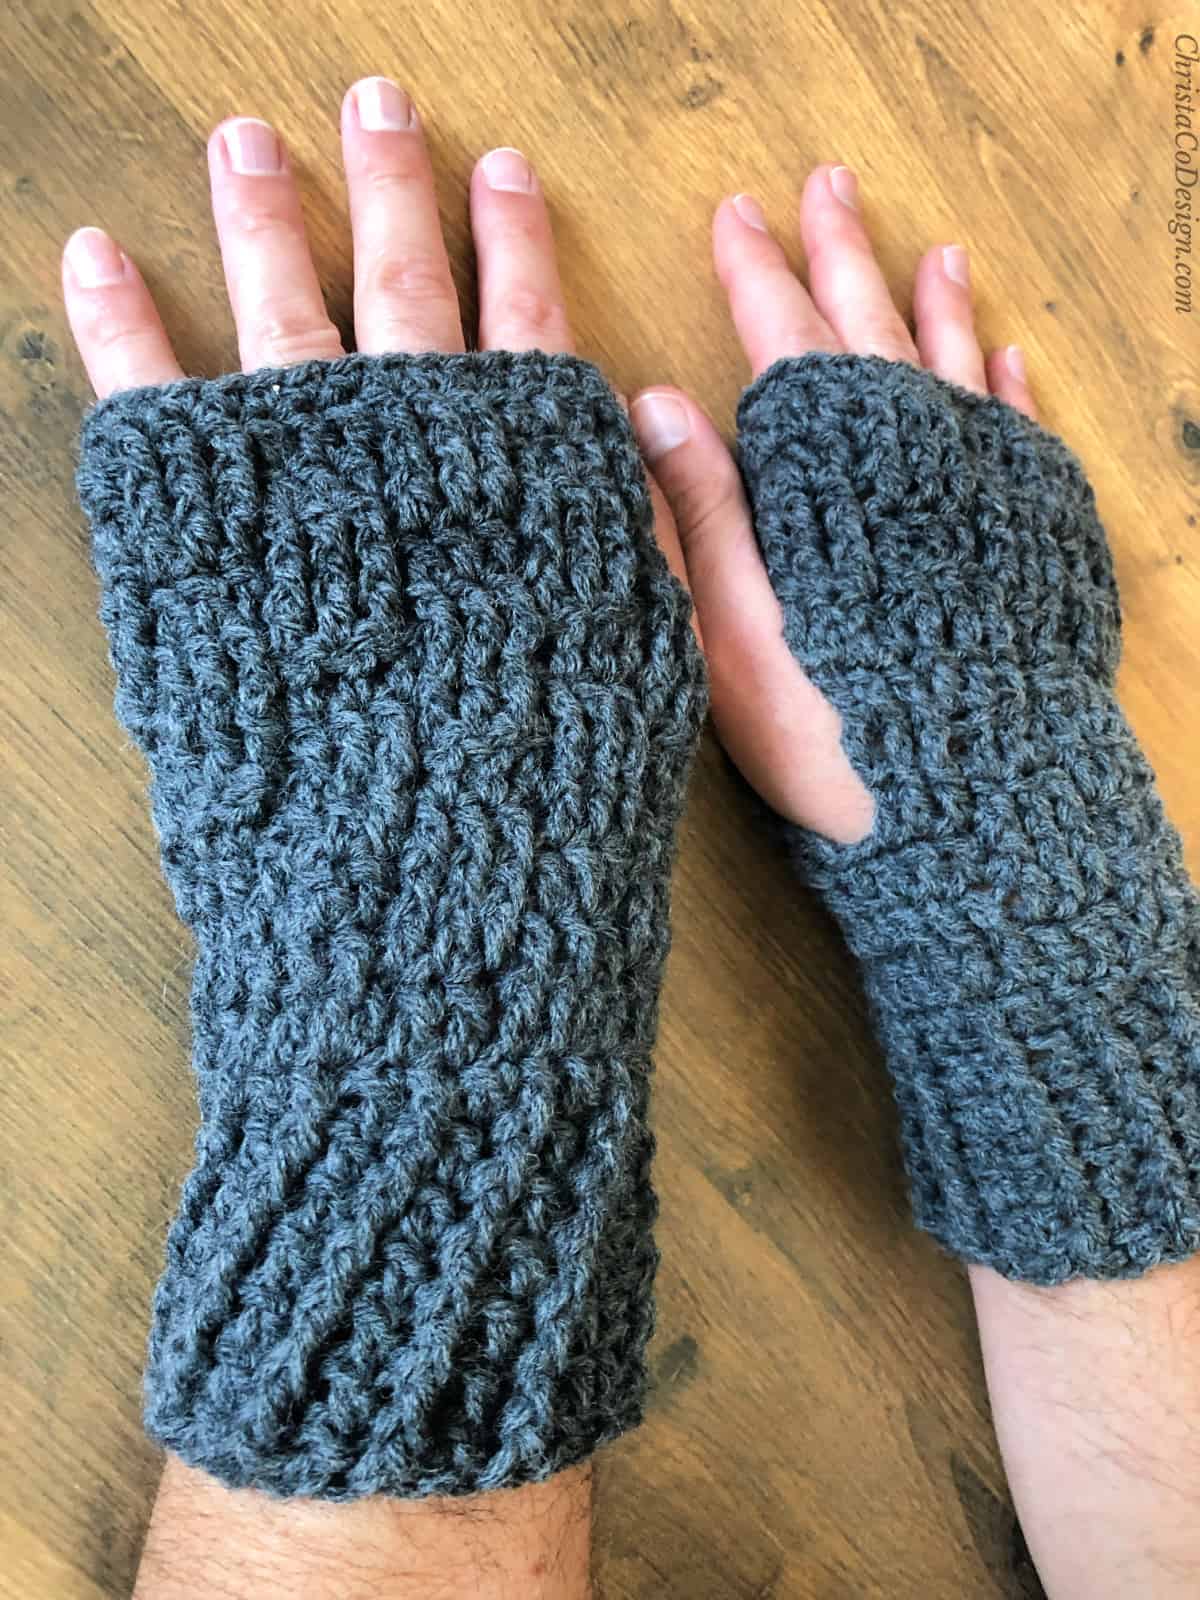 Men's grey crochet wrist warmers.